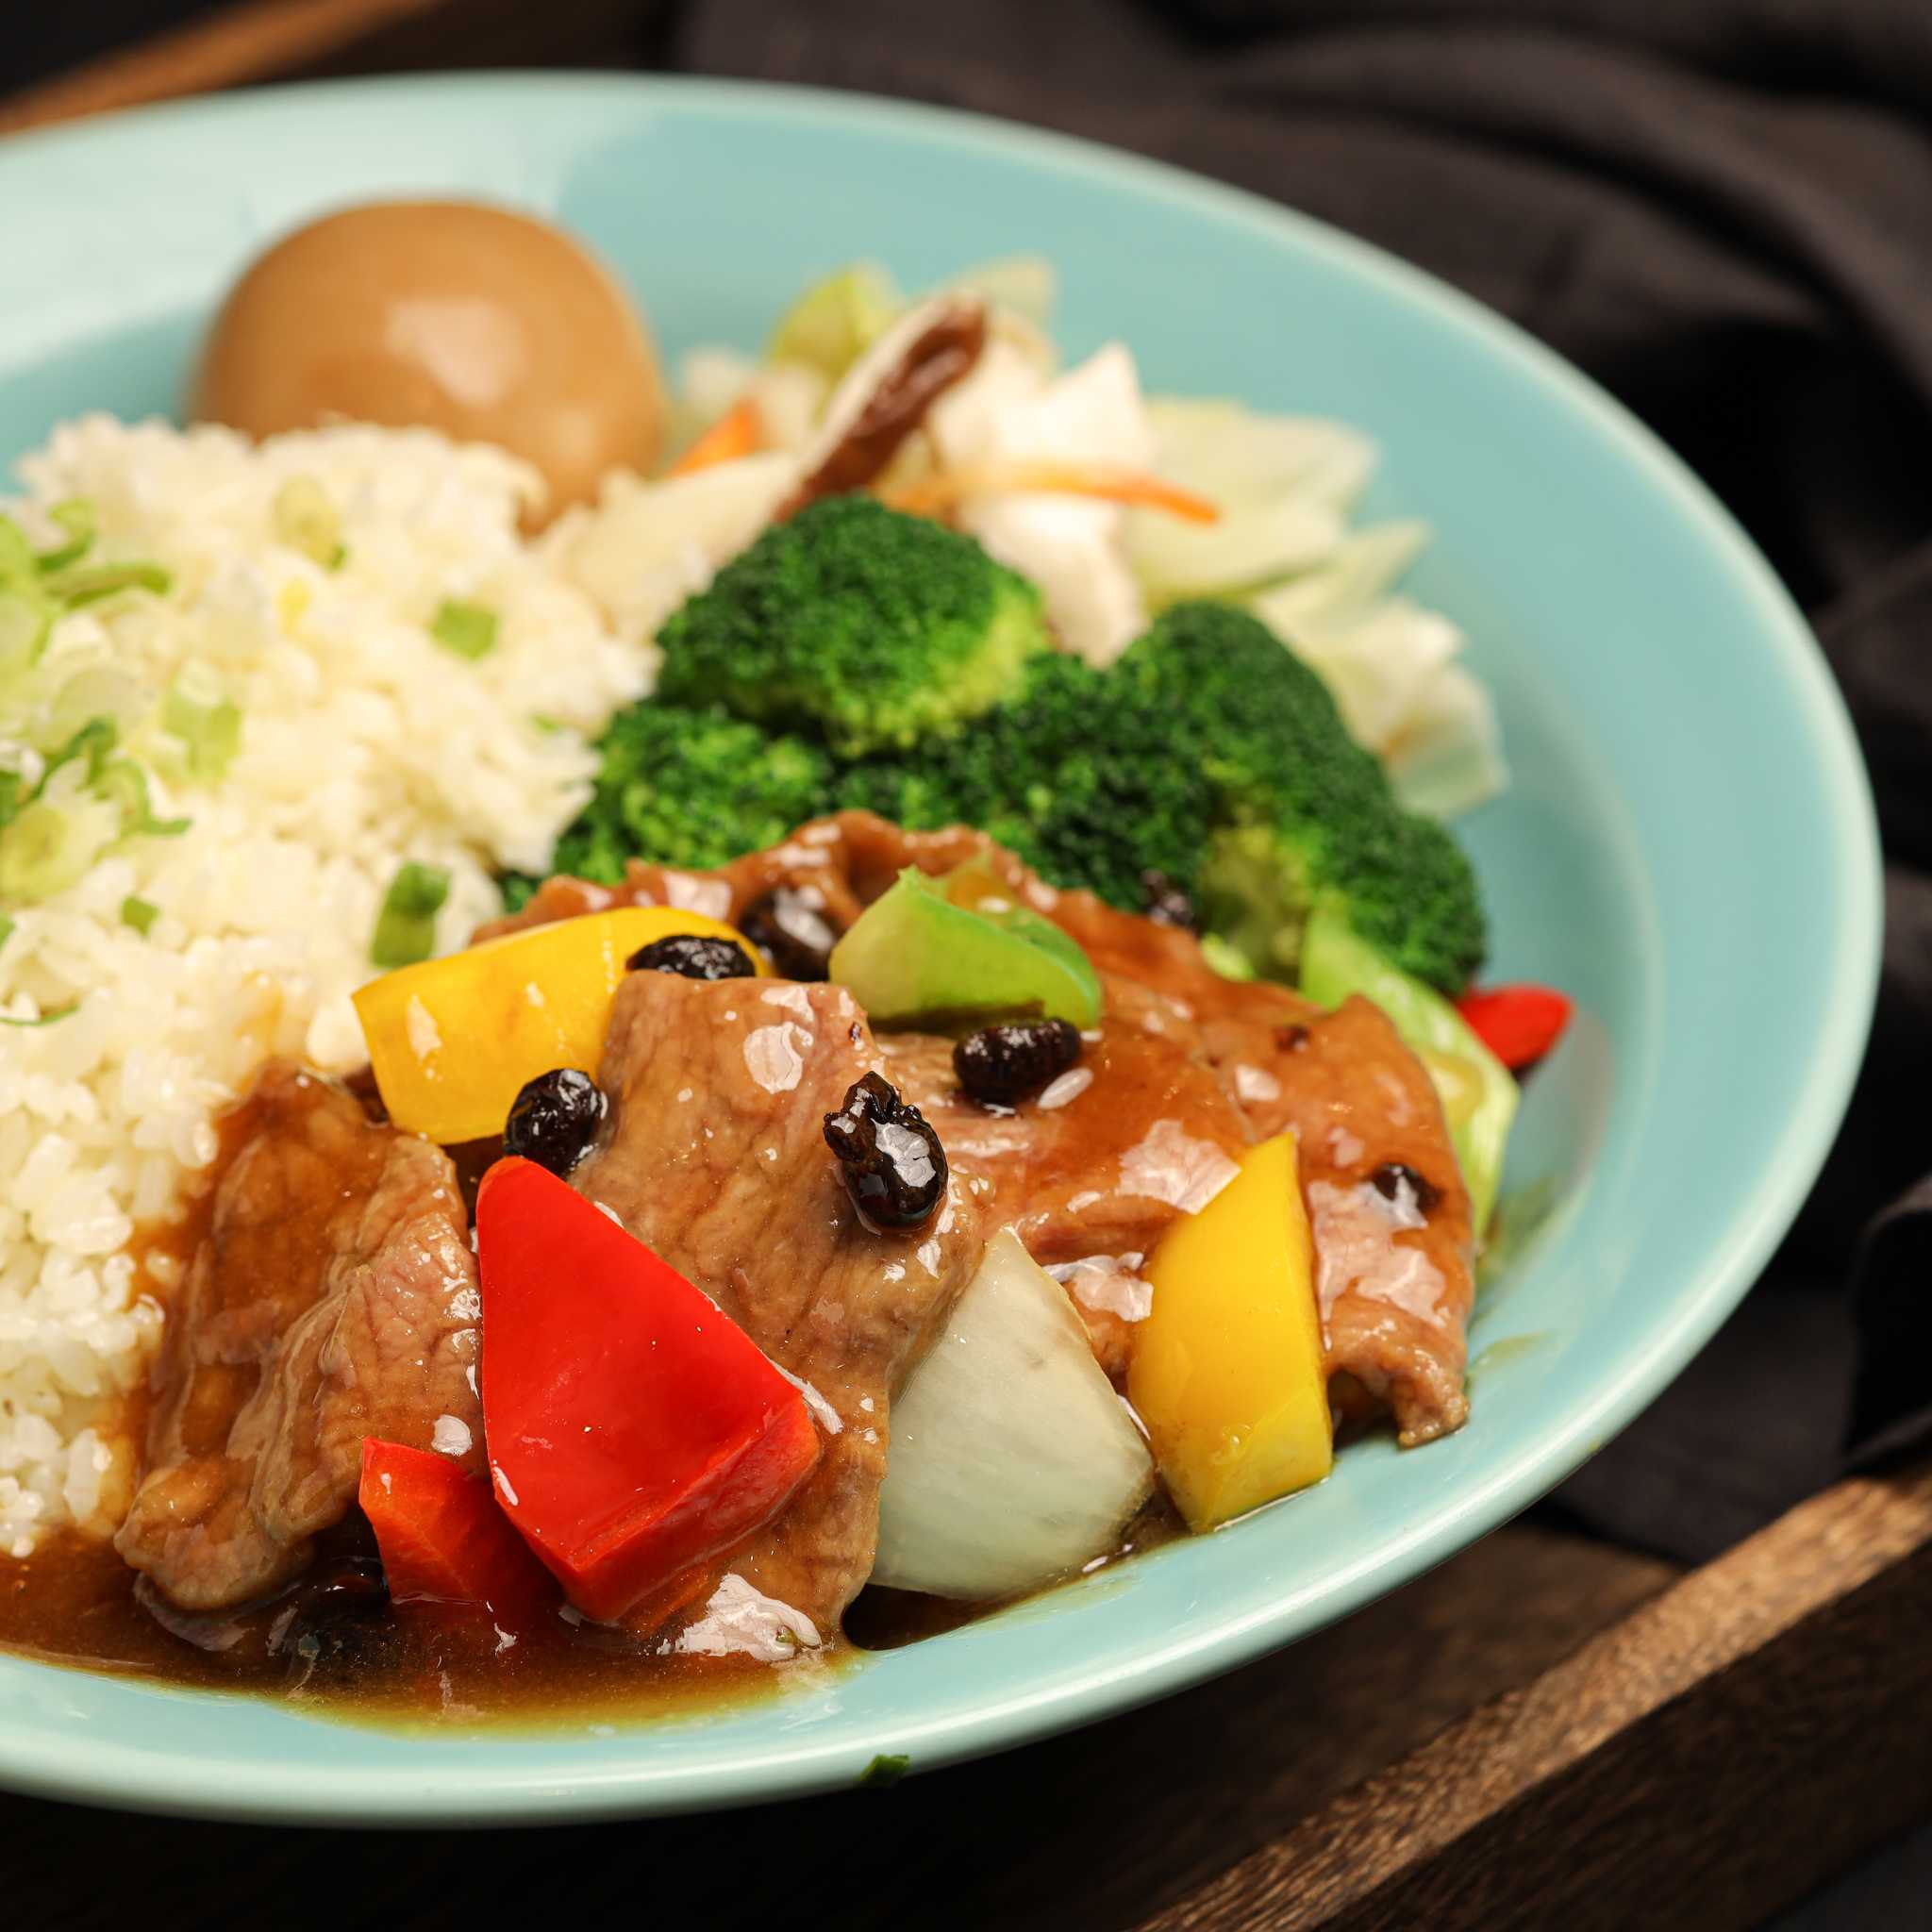 豉椒牛肉燴飯 Pepper Beef Stir-Fry with Rice